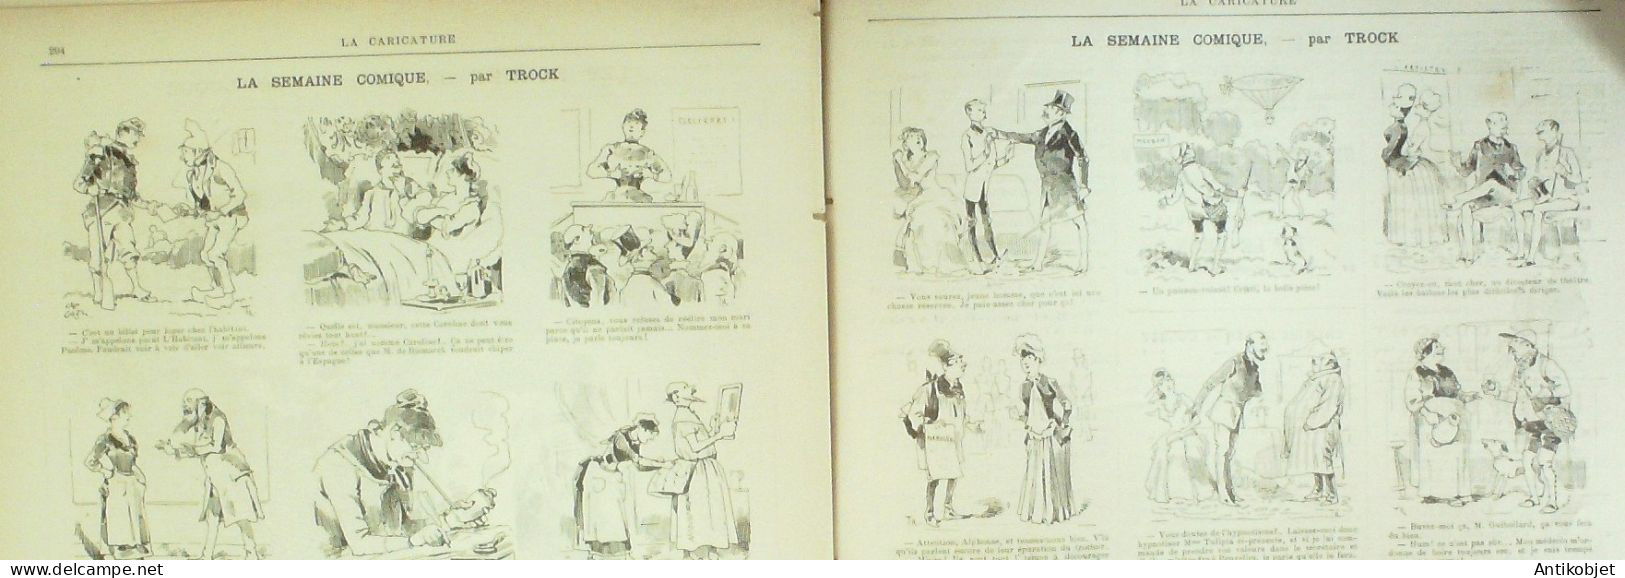 La Caricature 1885 N°298 Amour Jaloux Caran D'Ache Gino Job De Galifet Paar Luque Caran D'Ache - Revistas - Antes 1900